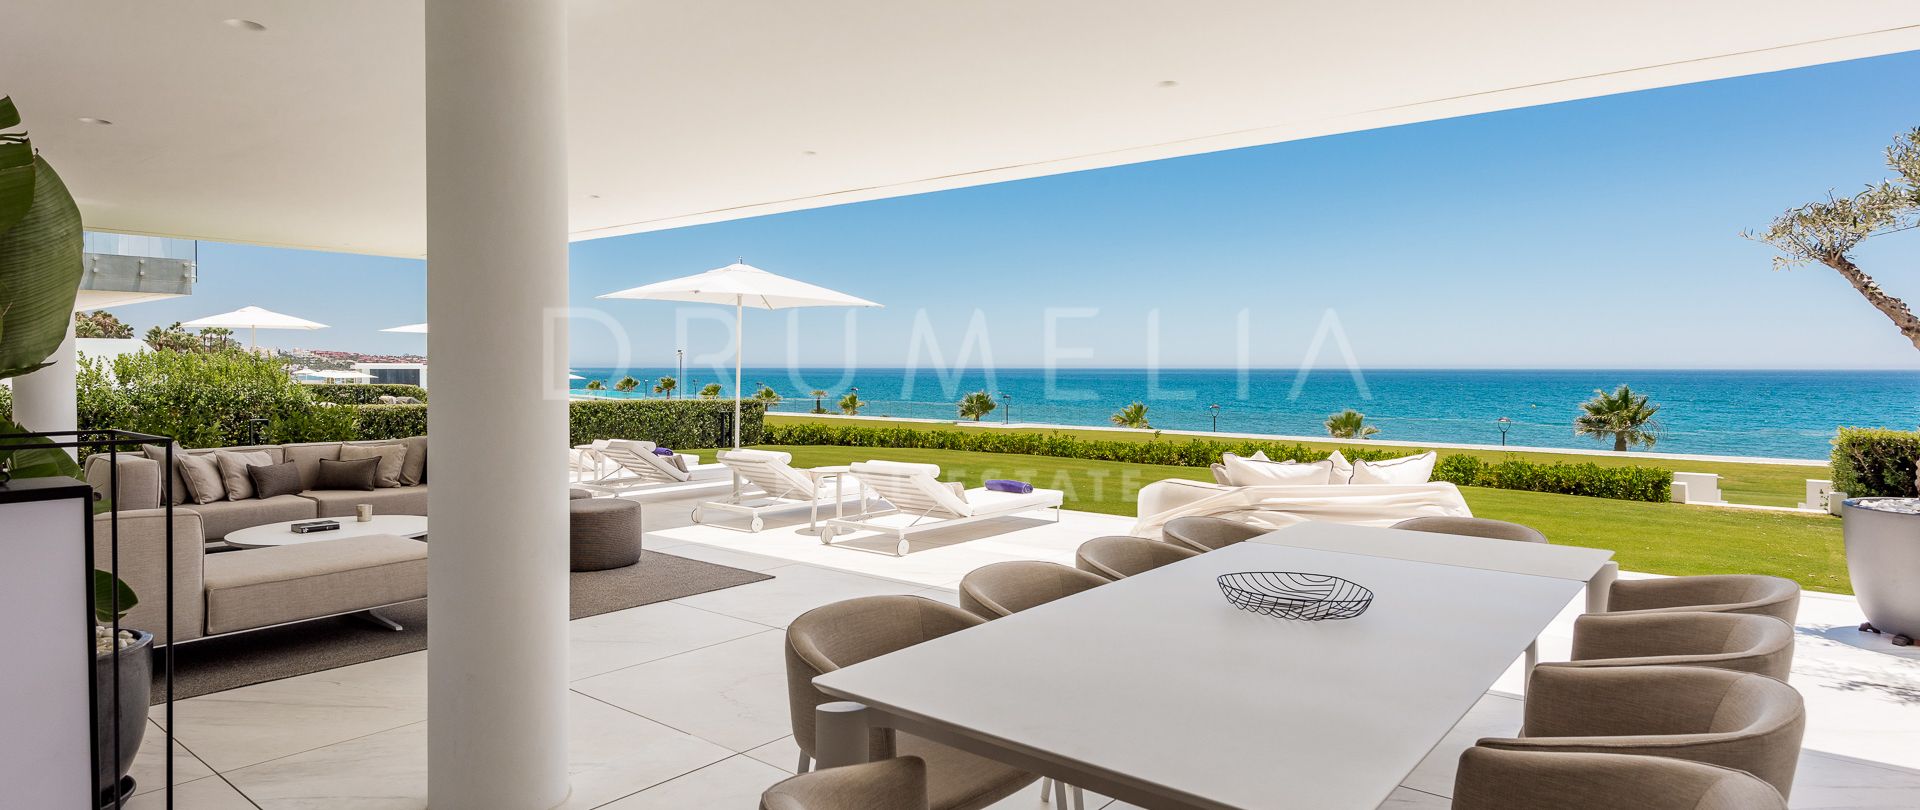 Wunderschöne neue Luxuswohnung direkt am Strand, Emare, Neue Goldene Meile, Estepona